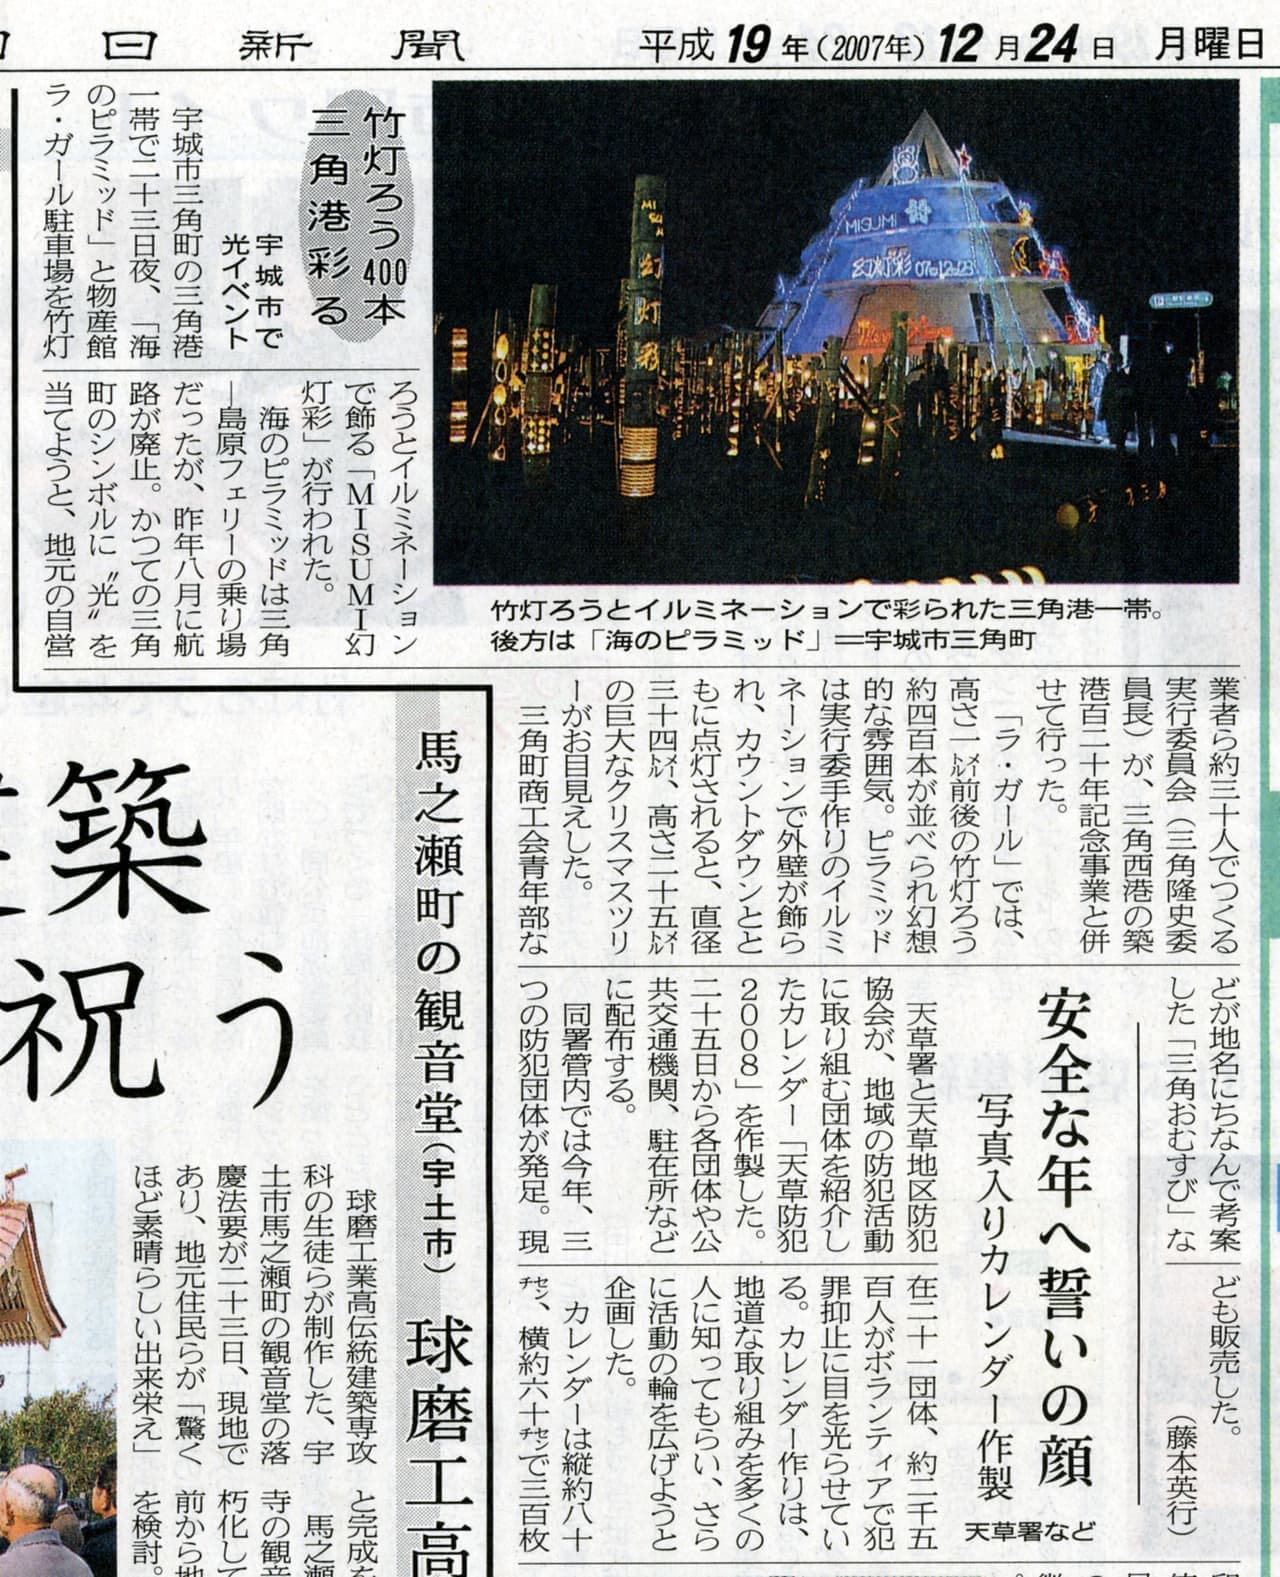 2007年12月24日 熊日「竹灯ろう400本三角港彩る」